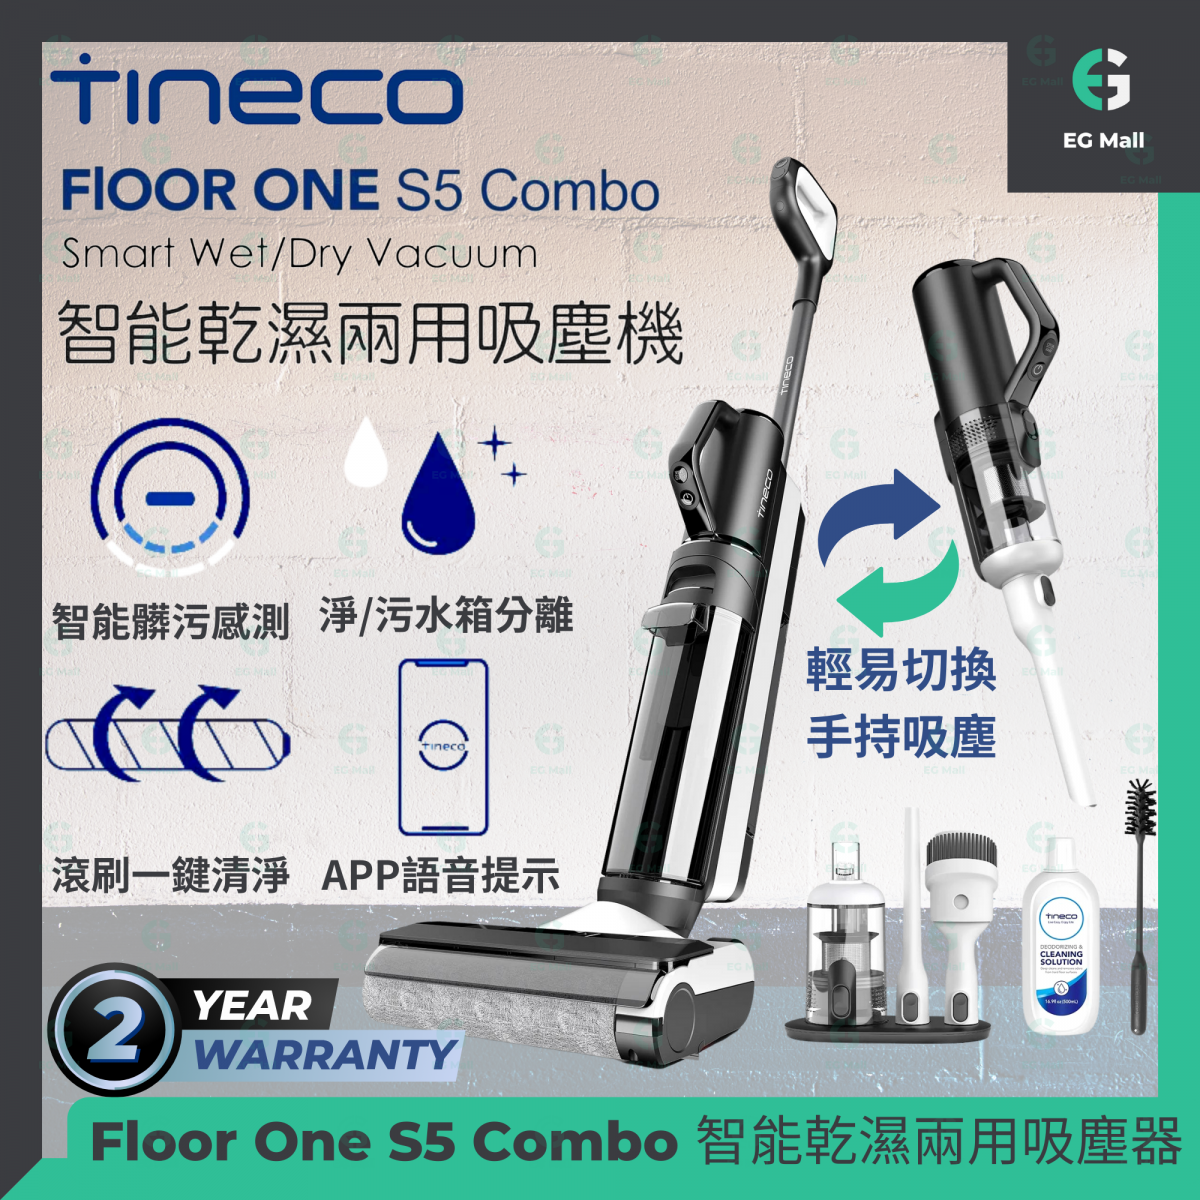 Tineco Floor One S5 Combo Cordless Wet Dry Vacuum Cleaner